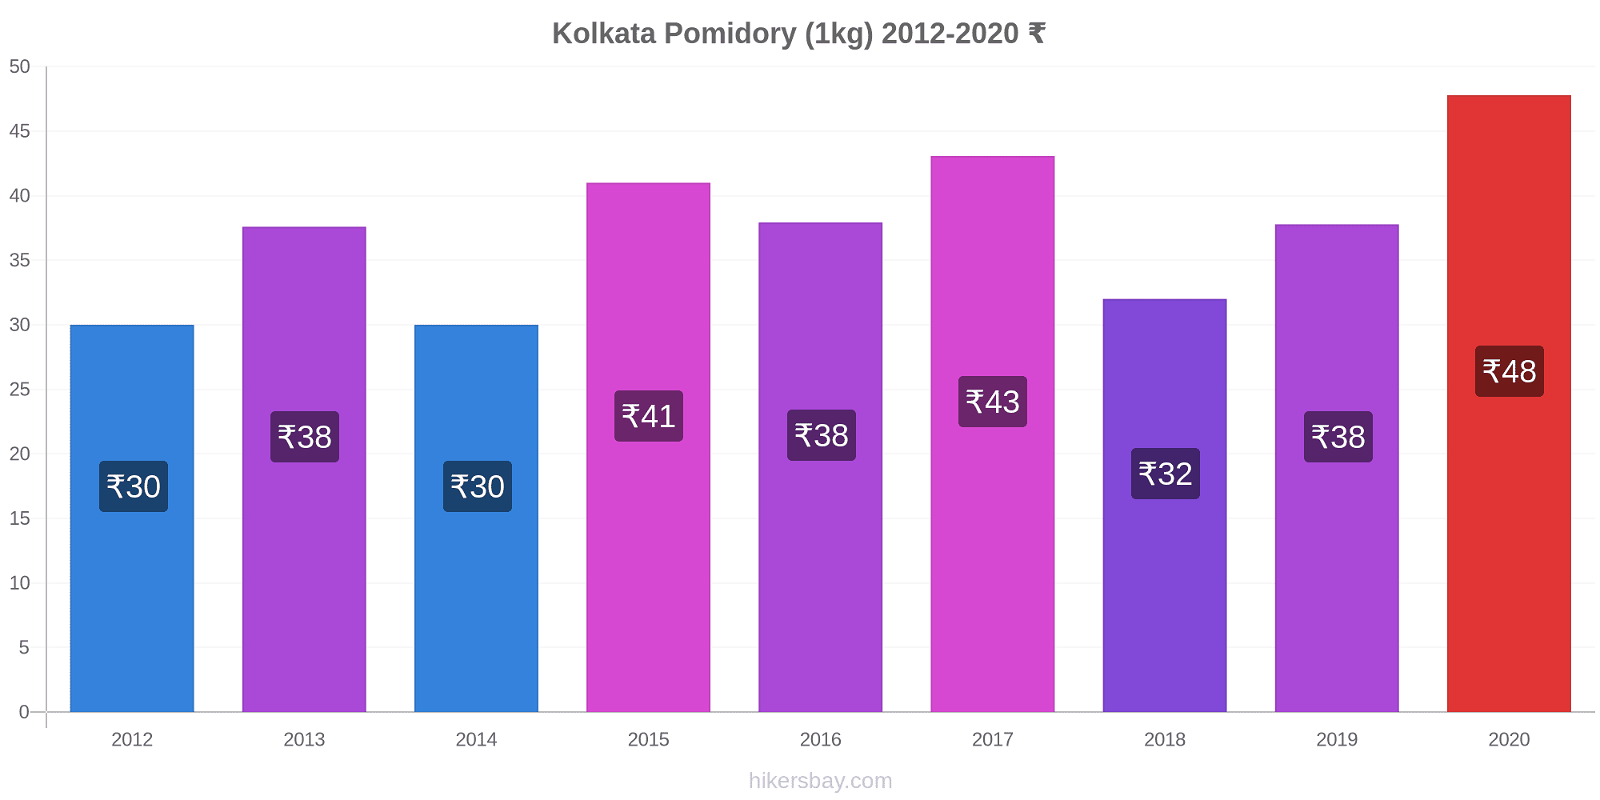 Kolkata zmiany cen Pomidory (1kg) hikersbay.com